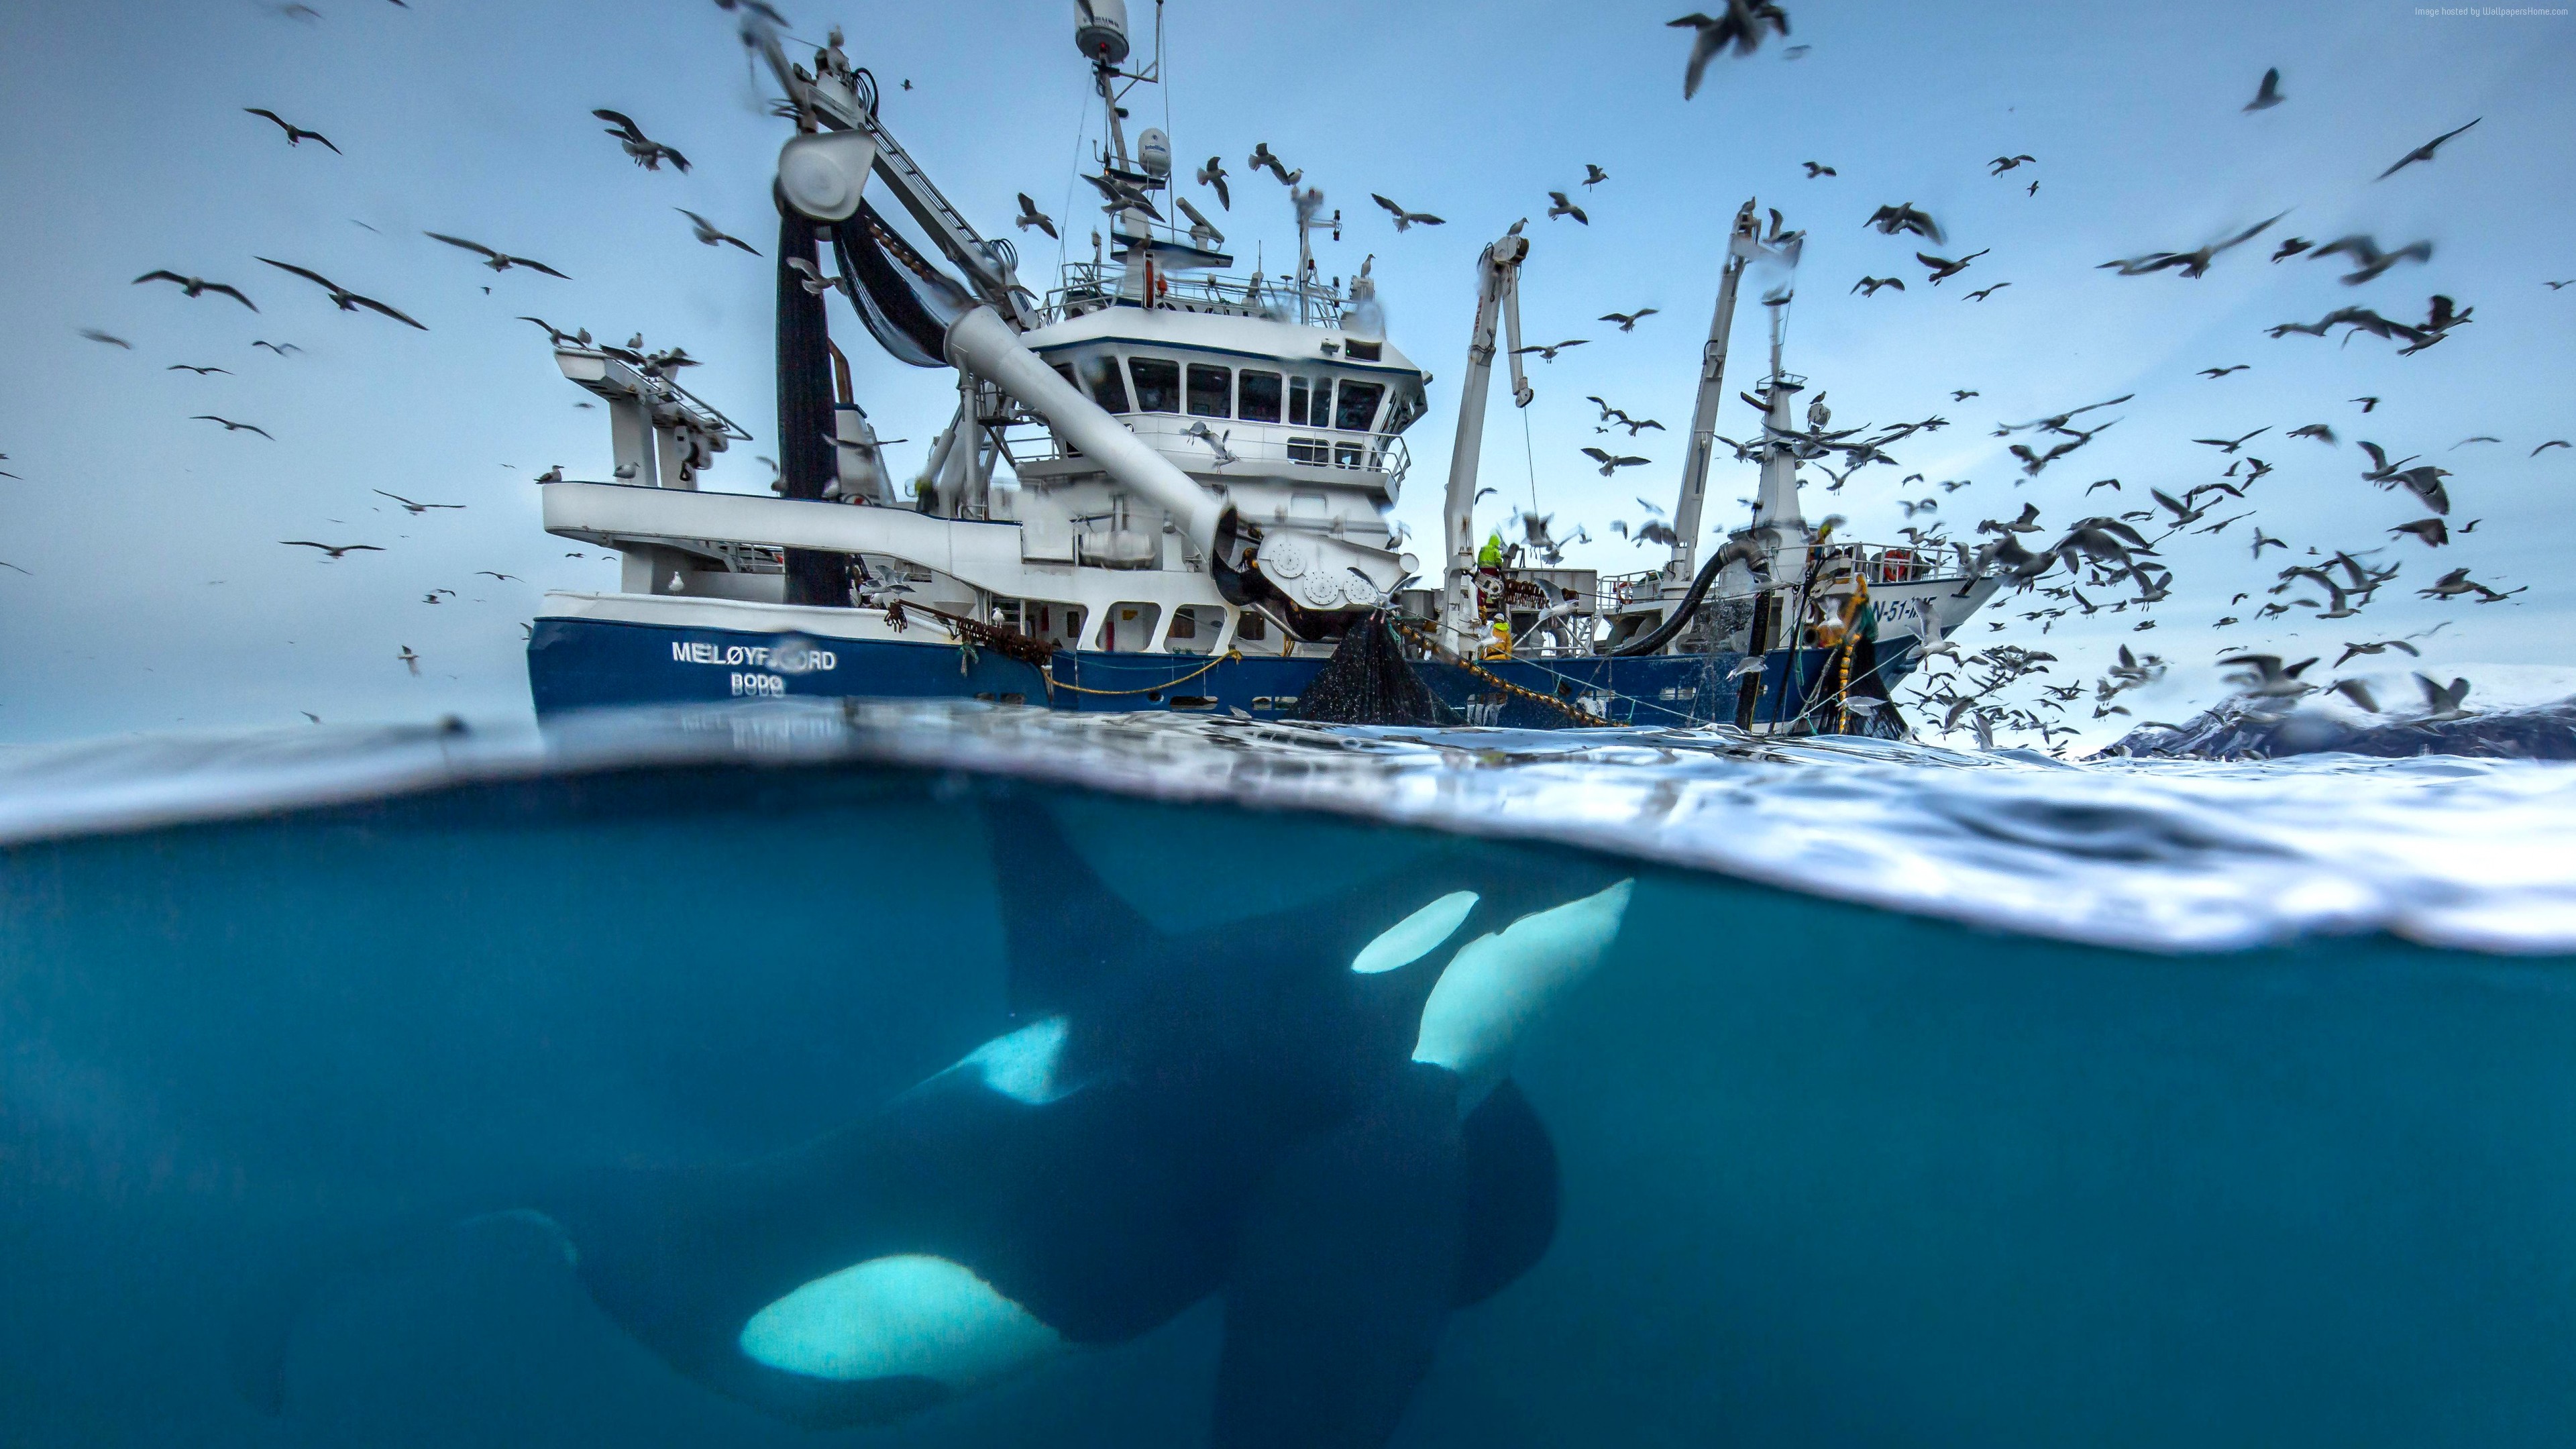 Wallpaper 2016 Wildlife Photography finalist, whale, boat, birds, Norway, Ocean, underwater, Animals